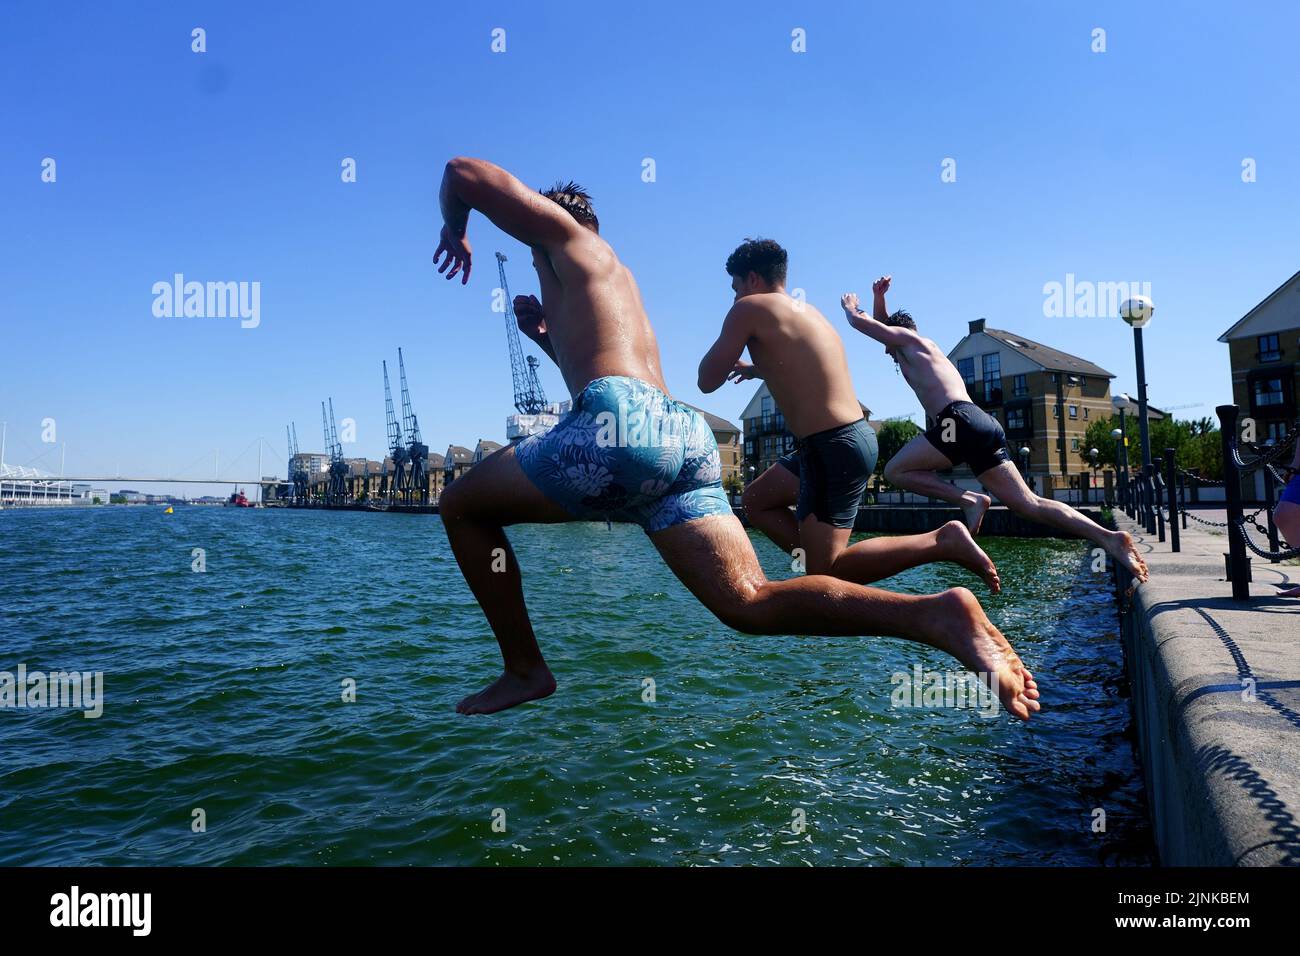 Drei junge Männer springen in das Royal Victoria Dock im Osten Londons. Für einige Teile Englands wird am Freitag eine Dürre ausgerufen, wobei die Temperaturen bis 35C Grad erreichen werden, was das Land heißer macht als Teile der Karibik. Bilddatum: Freitag, 12. August 2022. Stockfoto